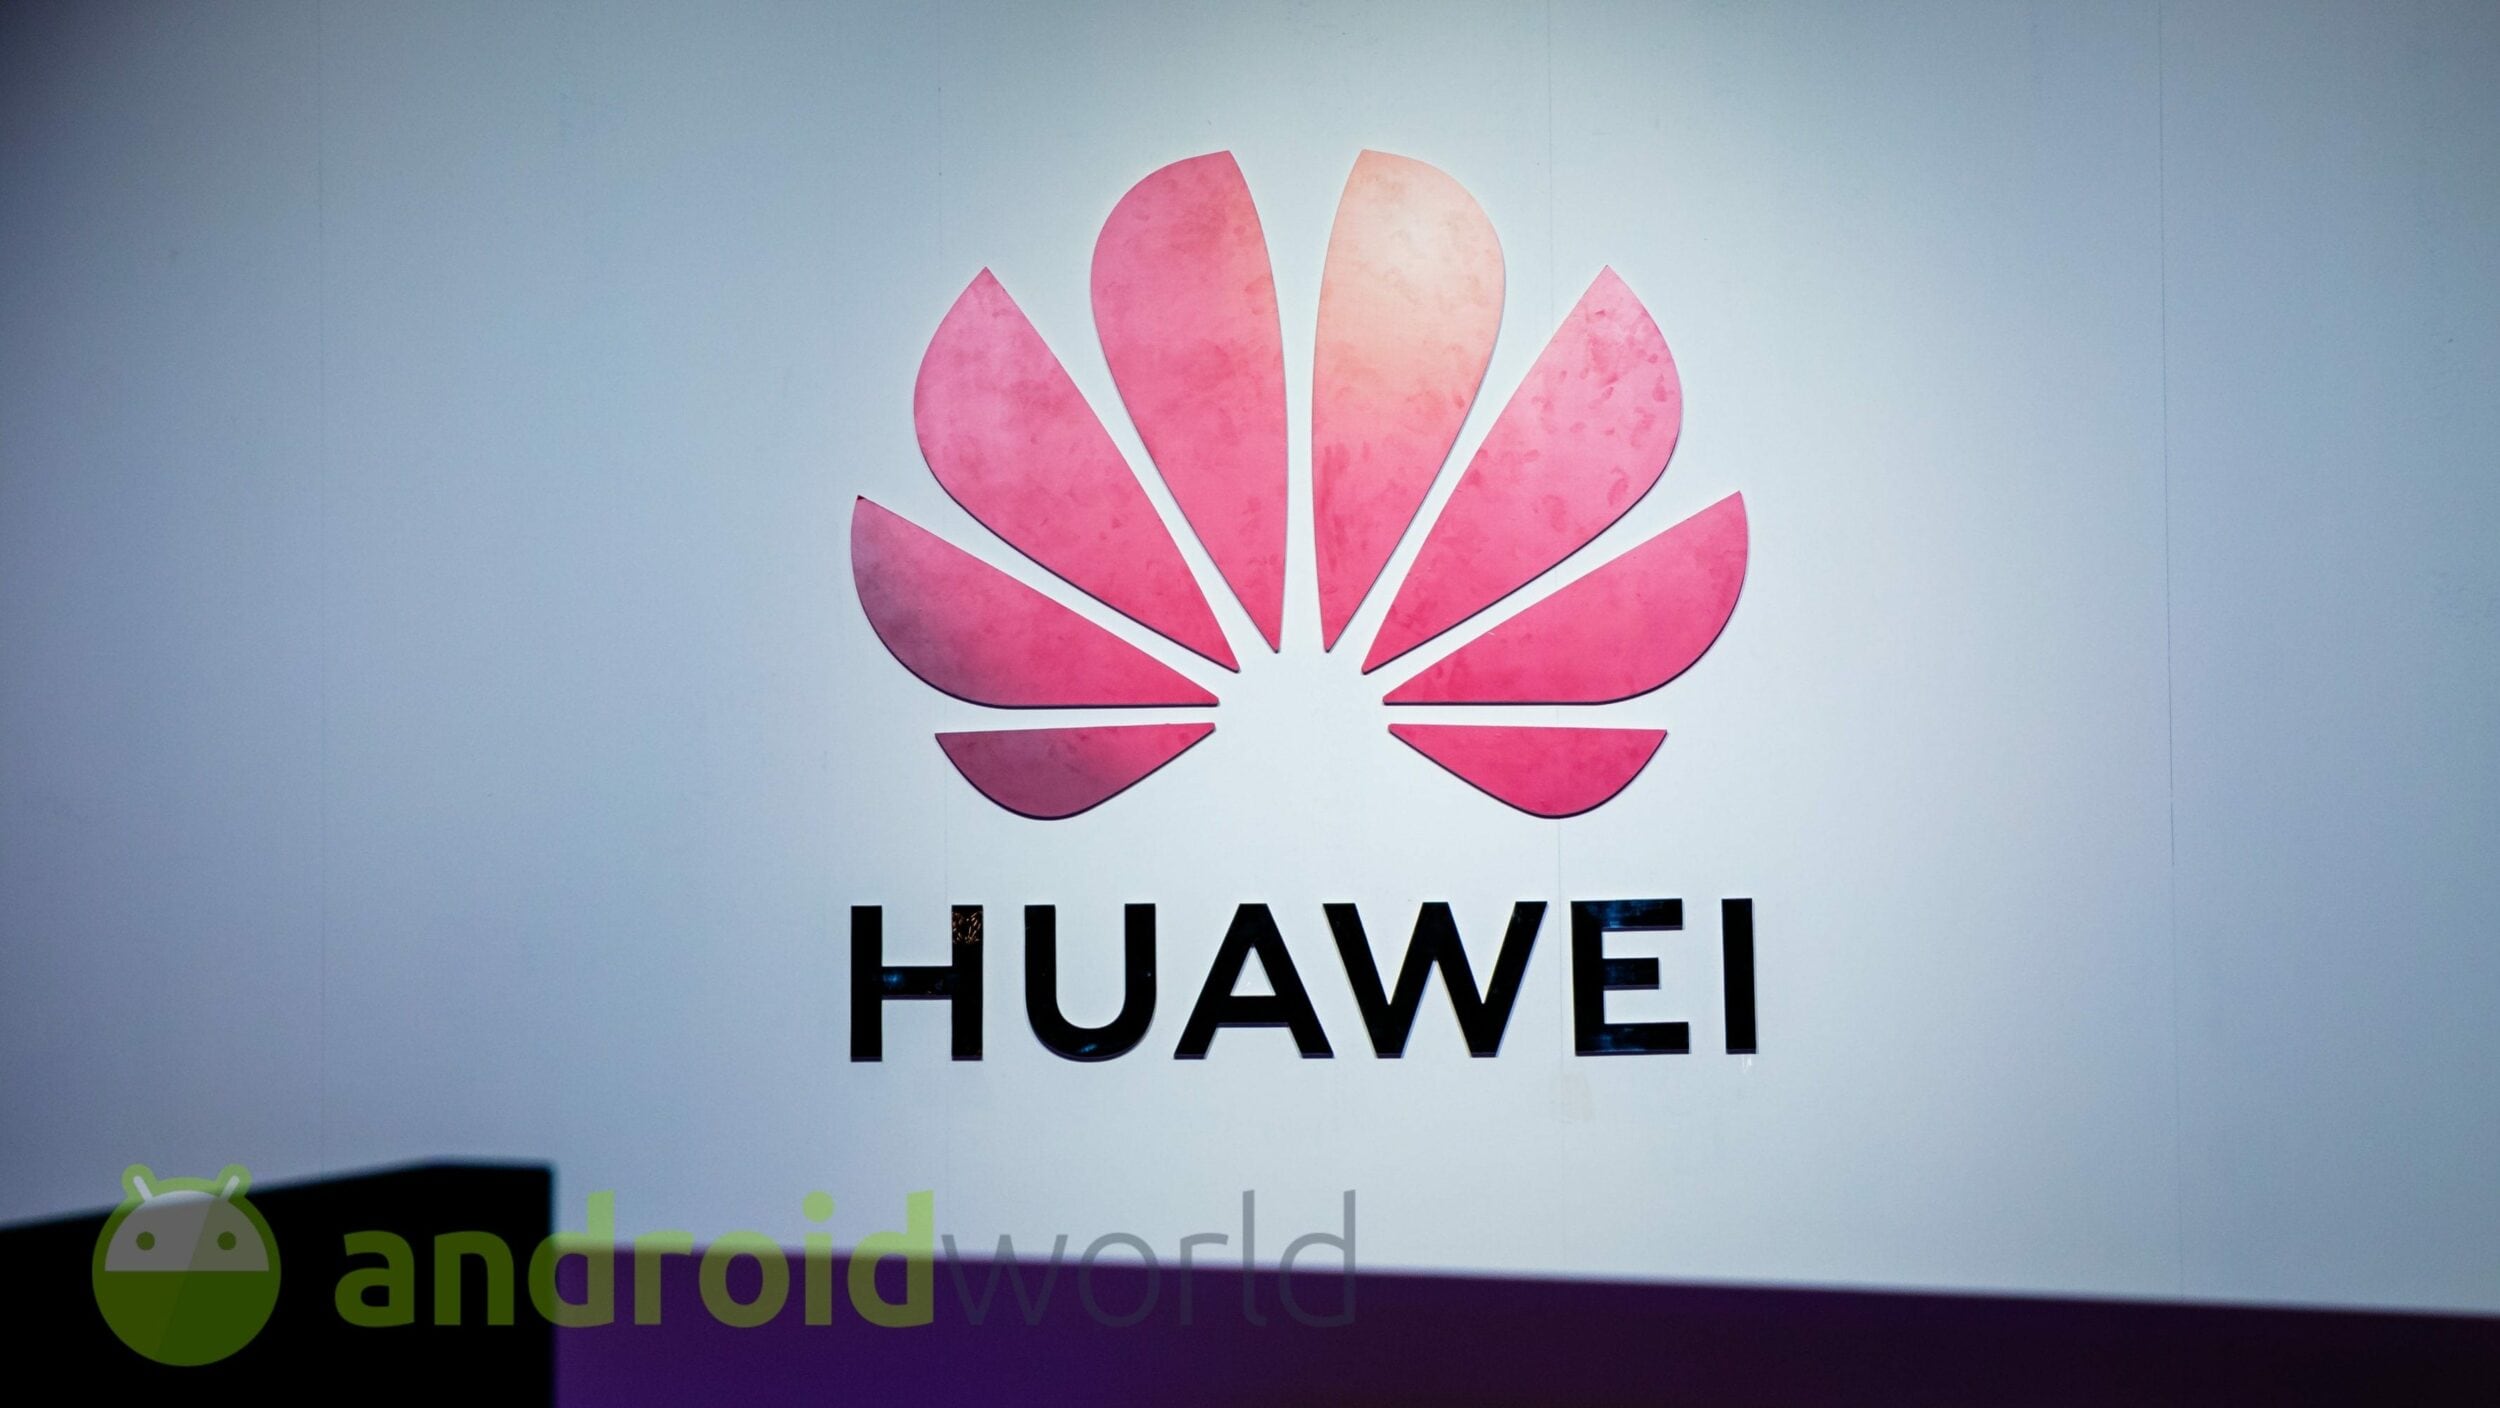 Huawei punta sulla sua alternativa ad Android: lancio ufficiale della HarmonyOS 2.0 il 16 dicembre (foto)